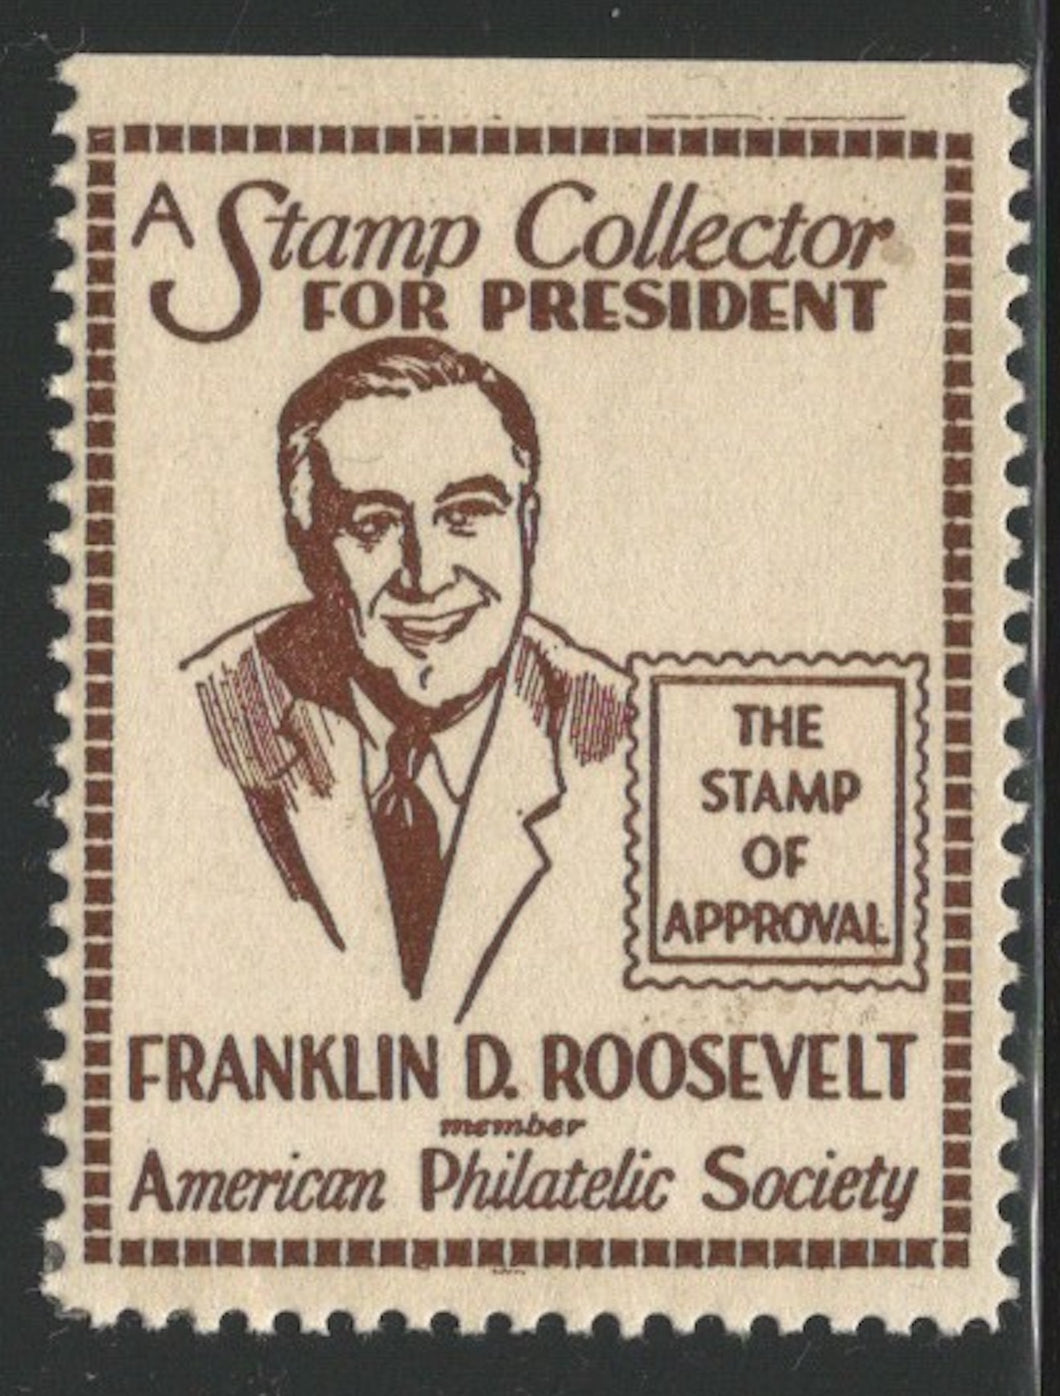 Franklin D. Roosevelt, A Stamp Collector for President, Poster Stamp